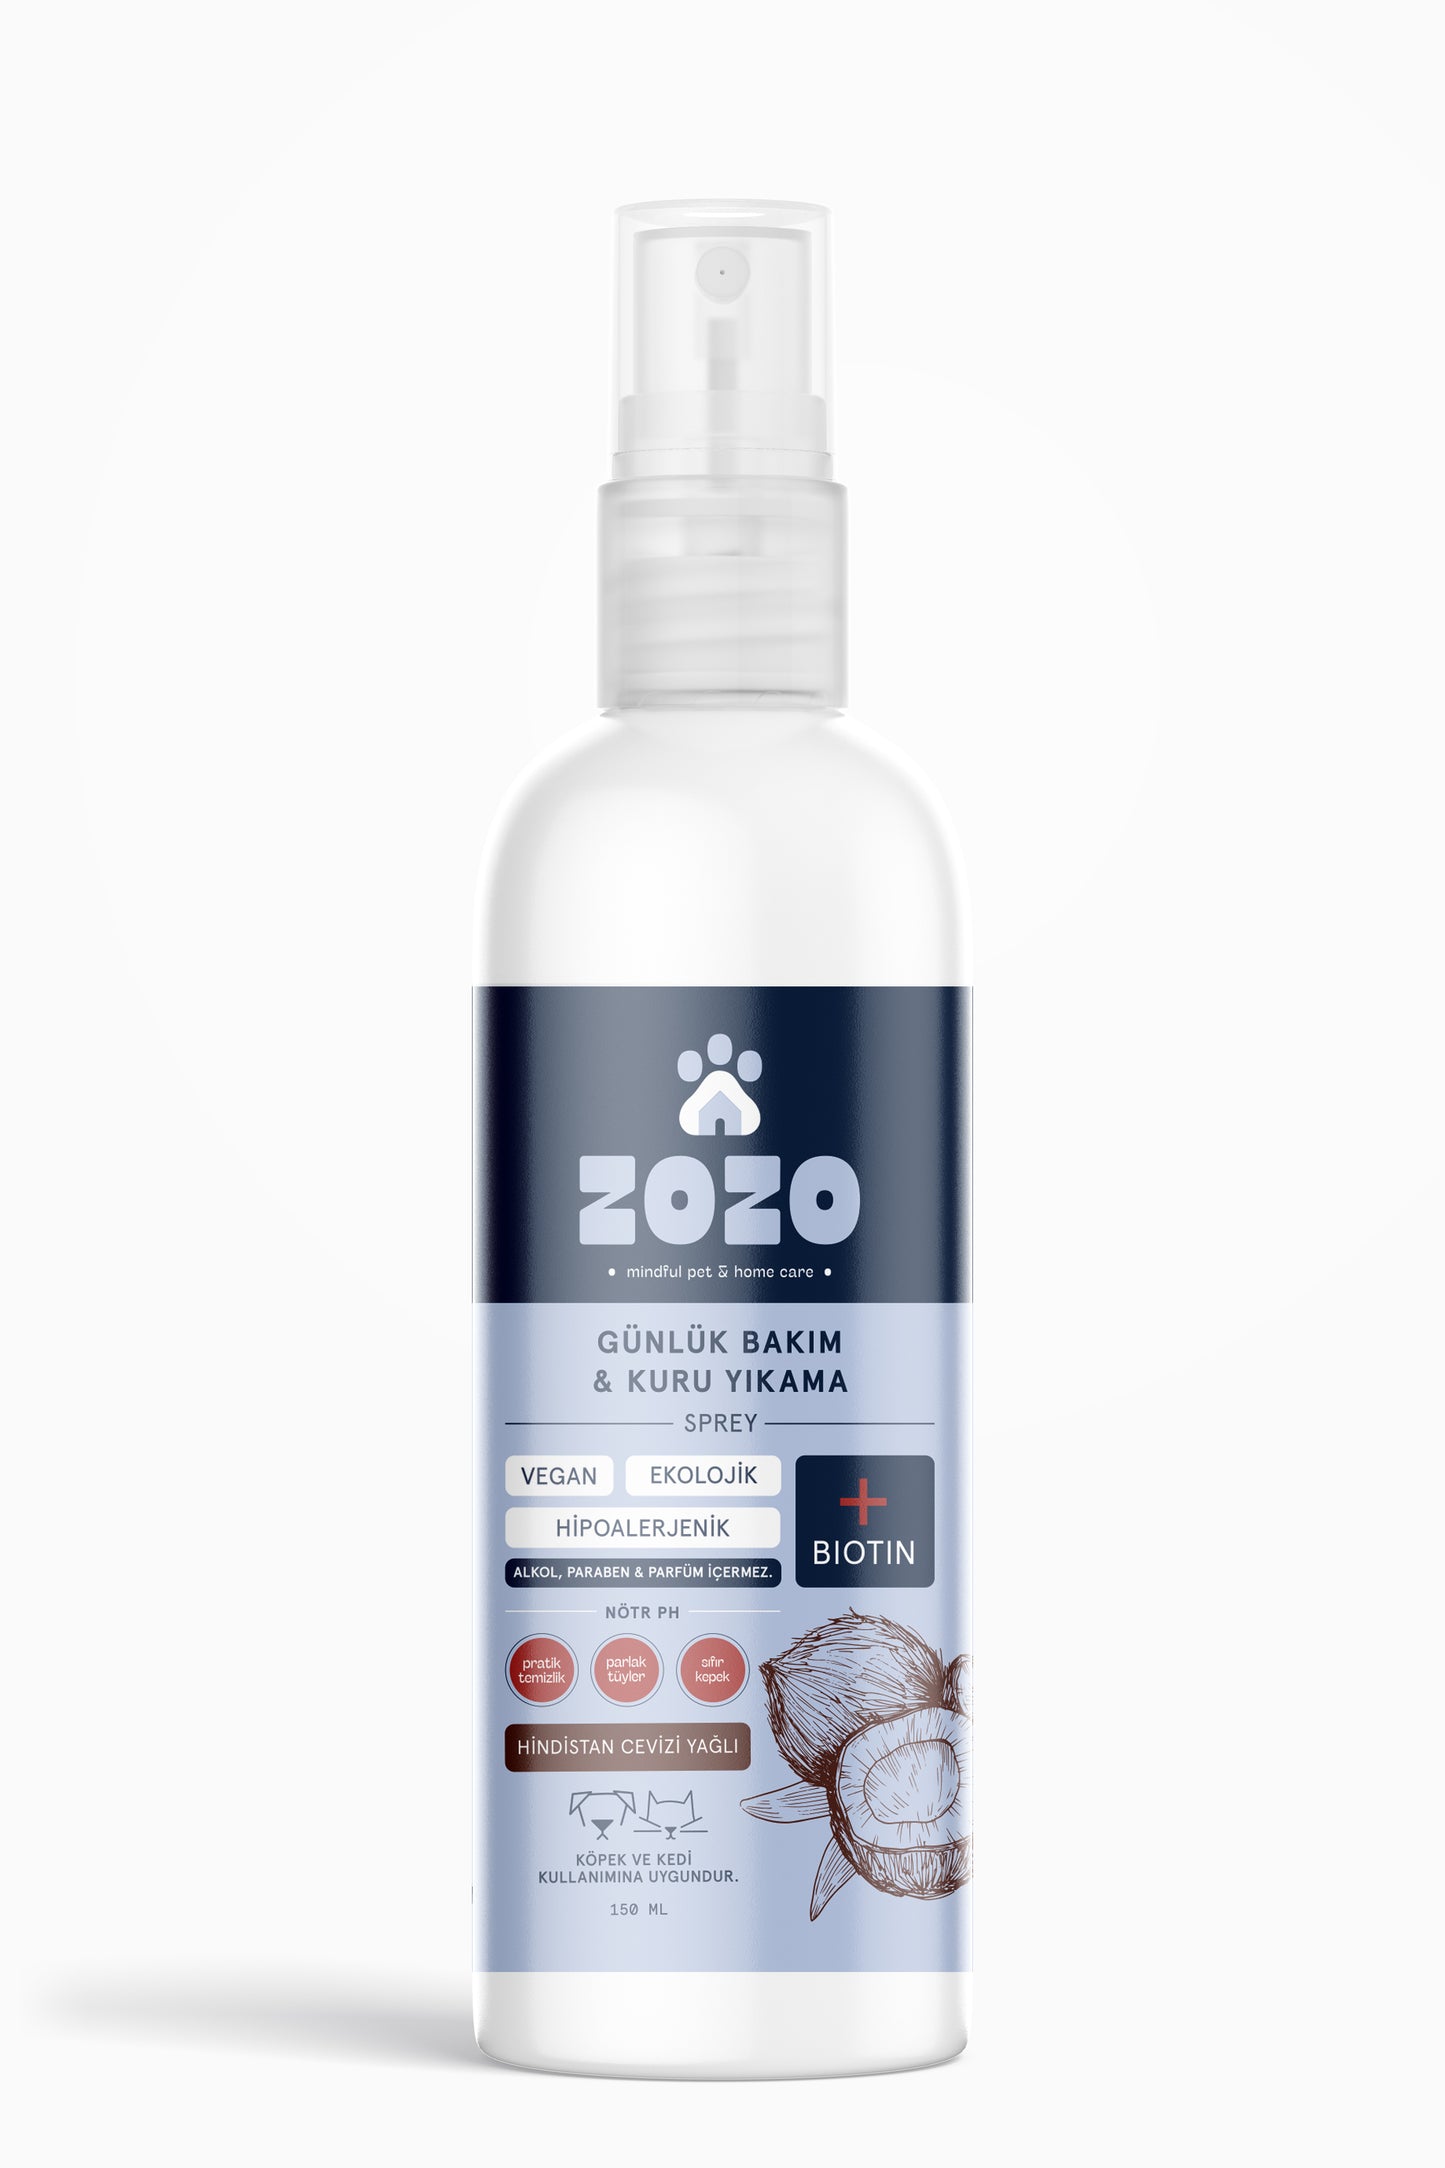 Kedi & Köpek Kuru Şampuan Sprey - Hindistan Cevizi Yağlı - Hipoalerjenik